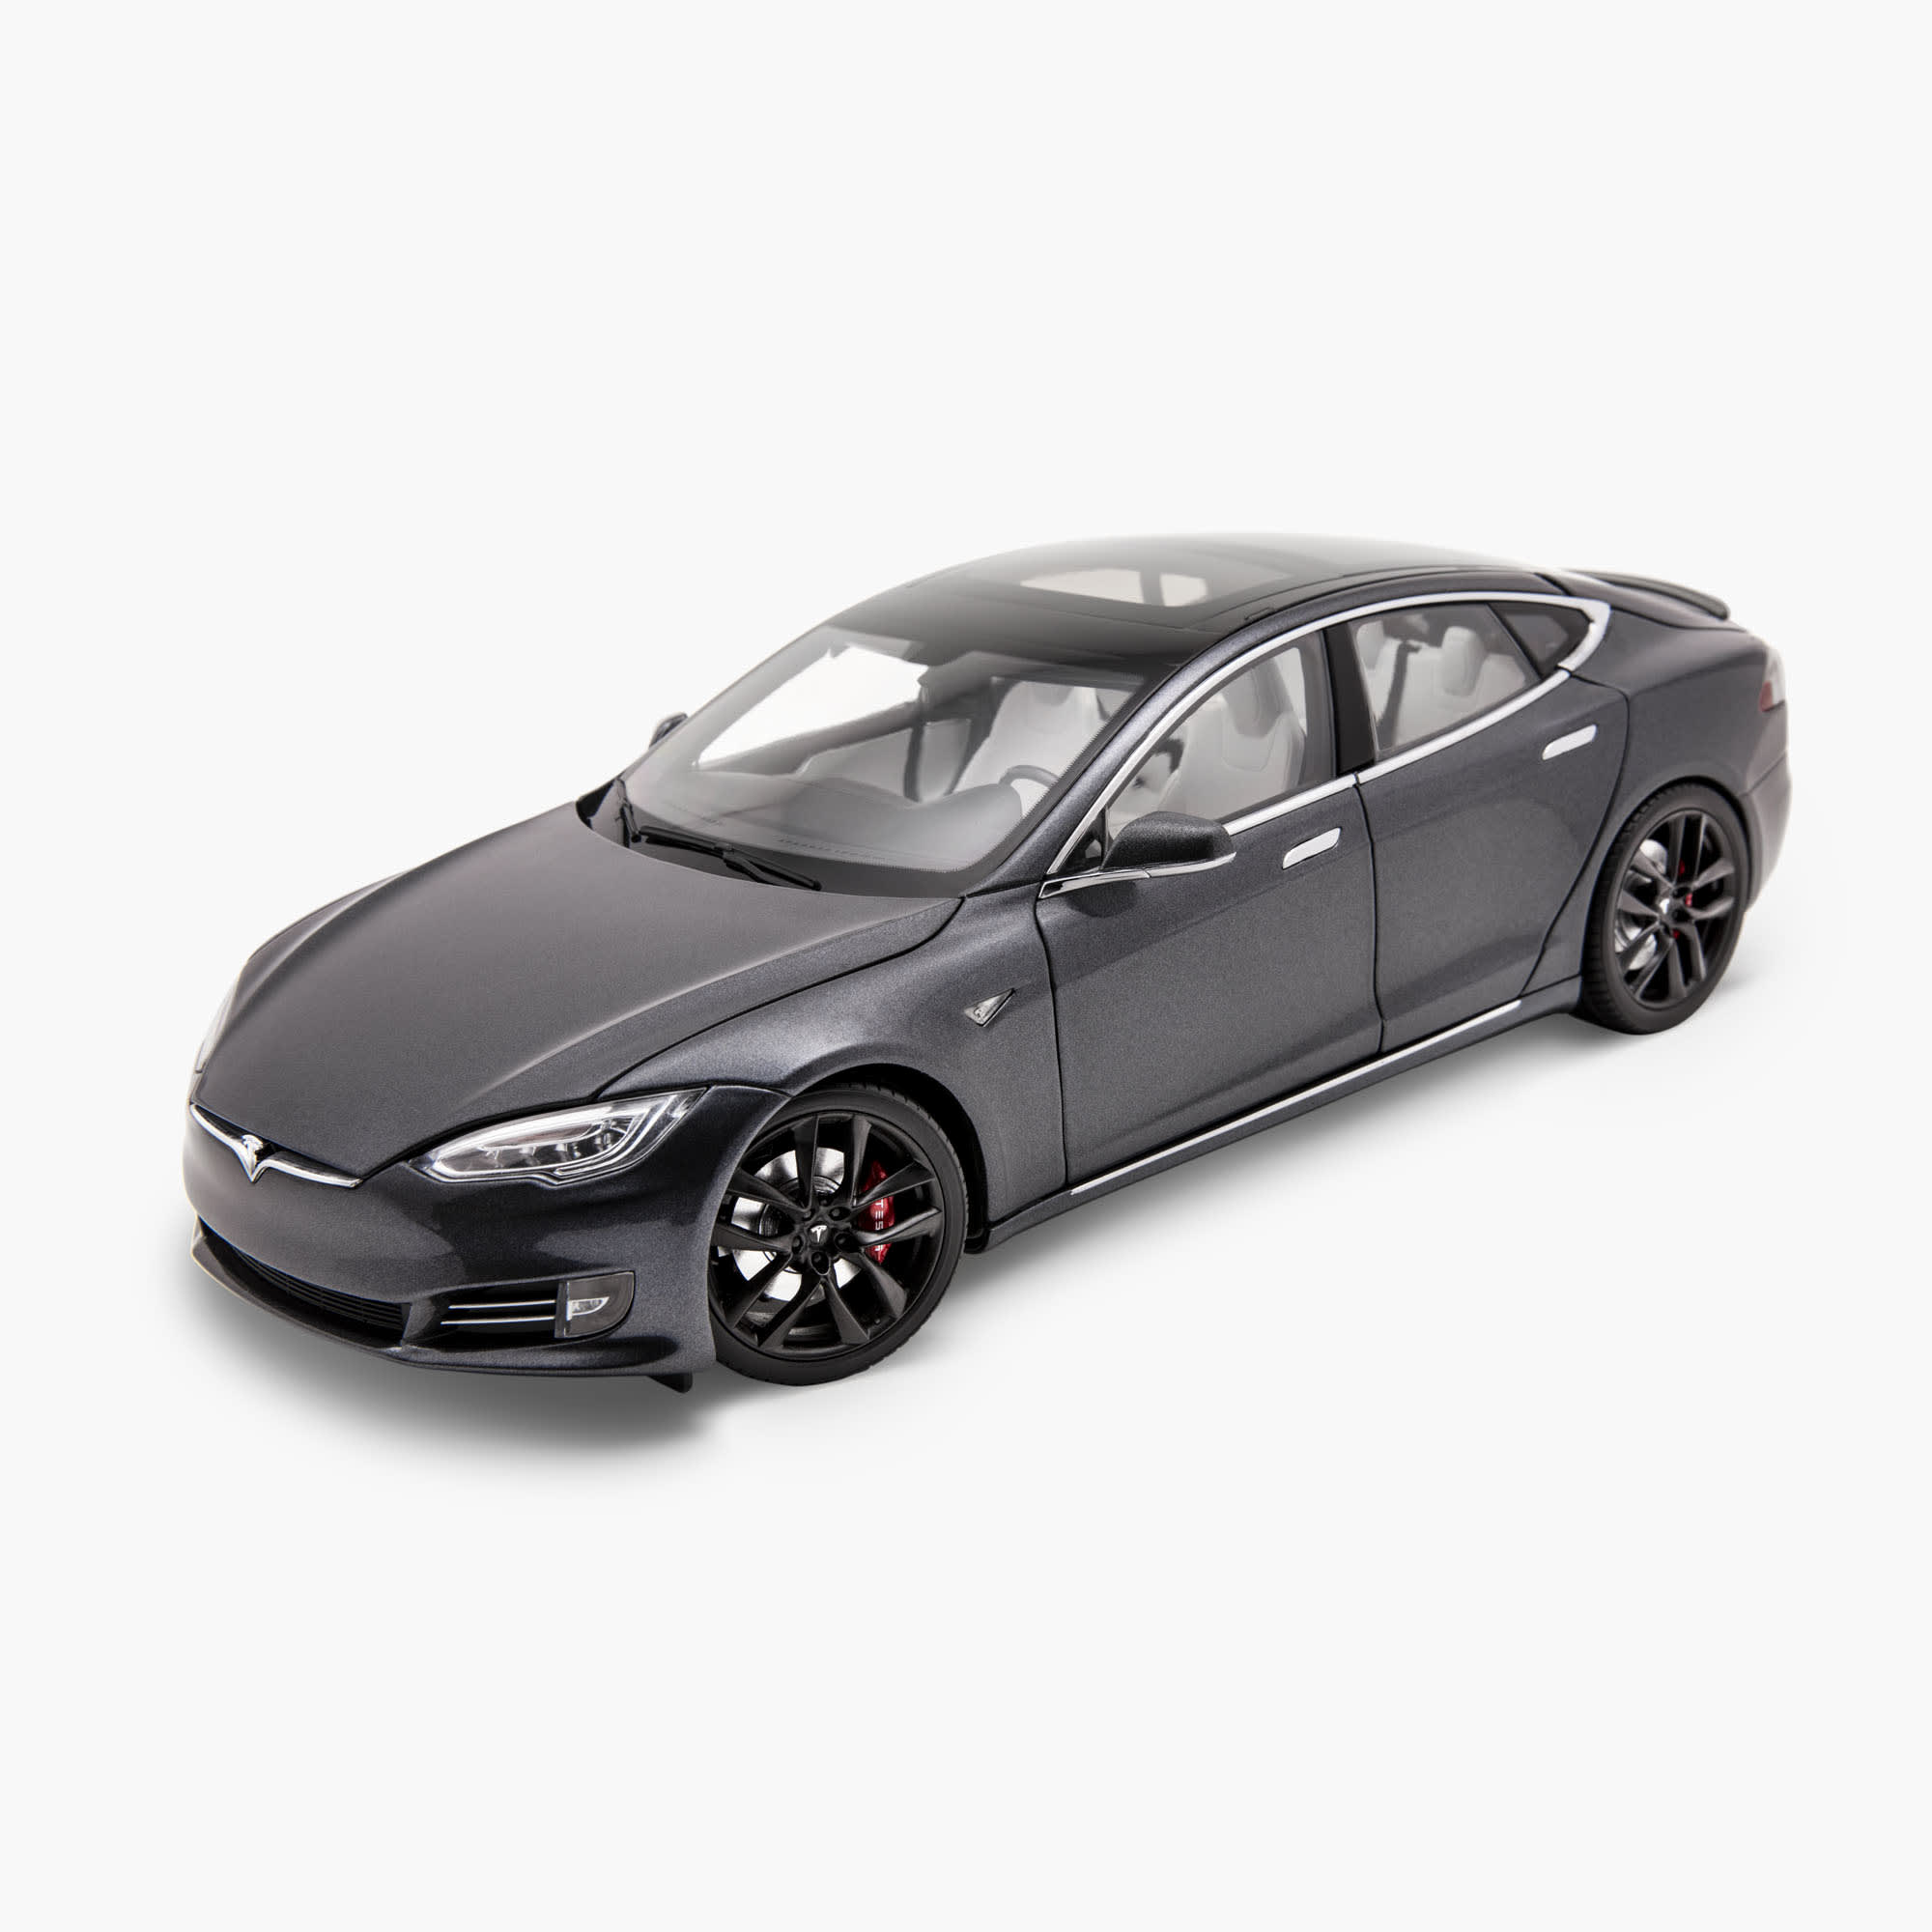 限量 1:18 Model S 模型